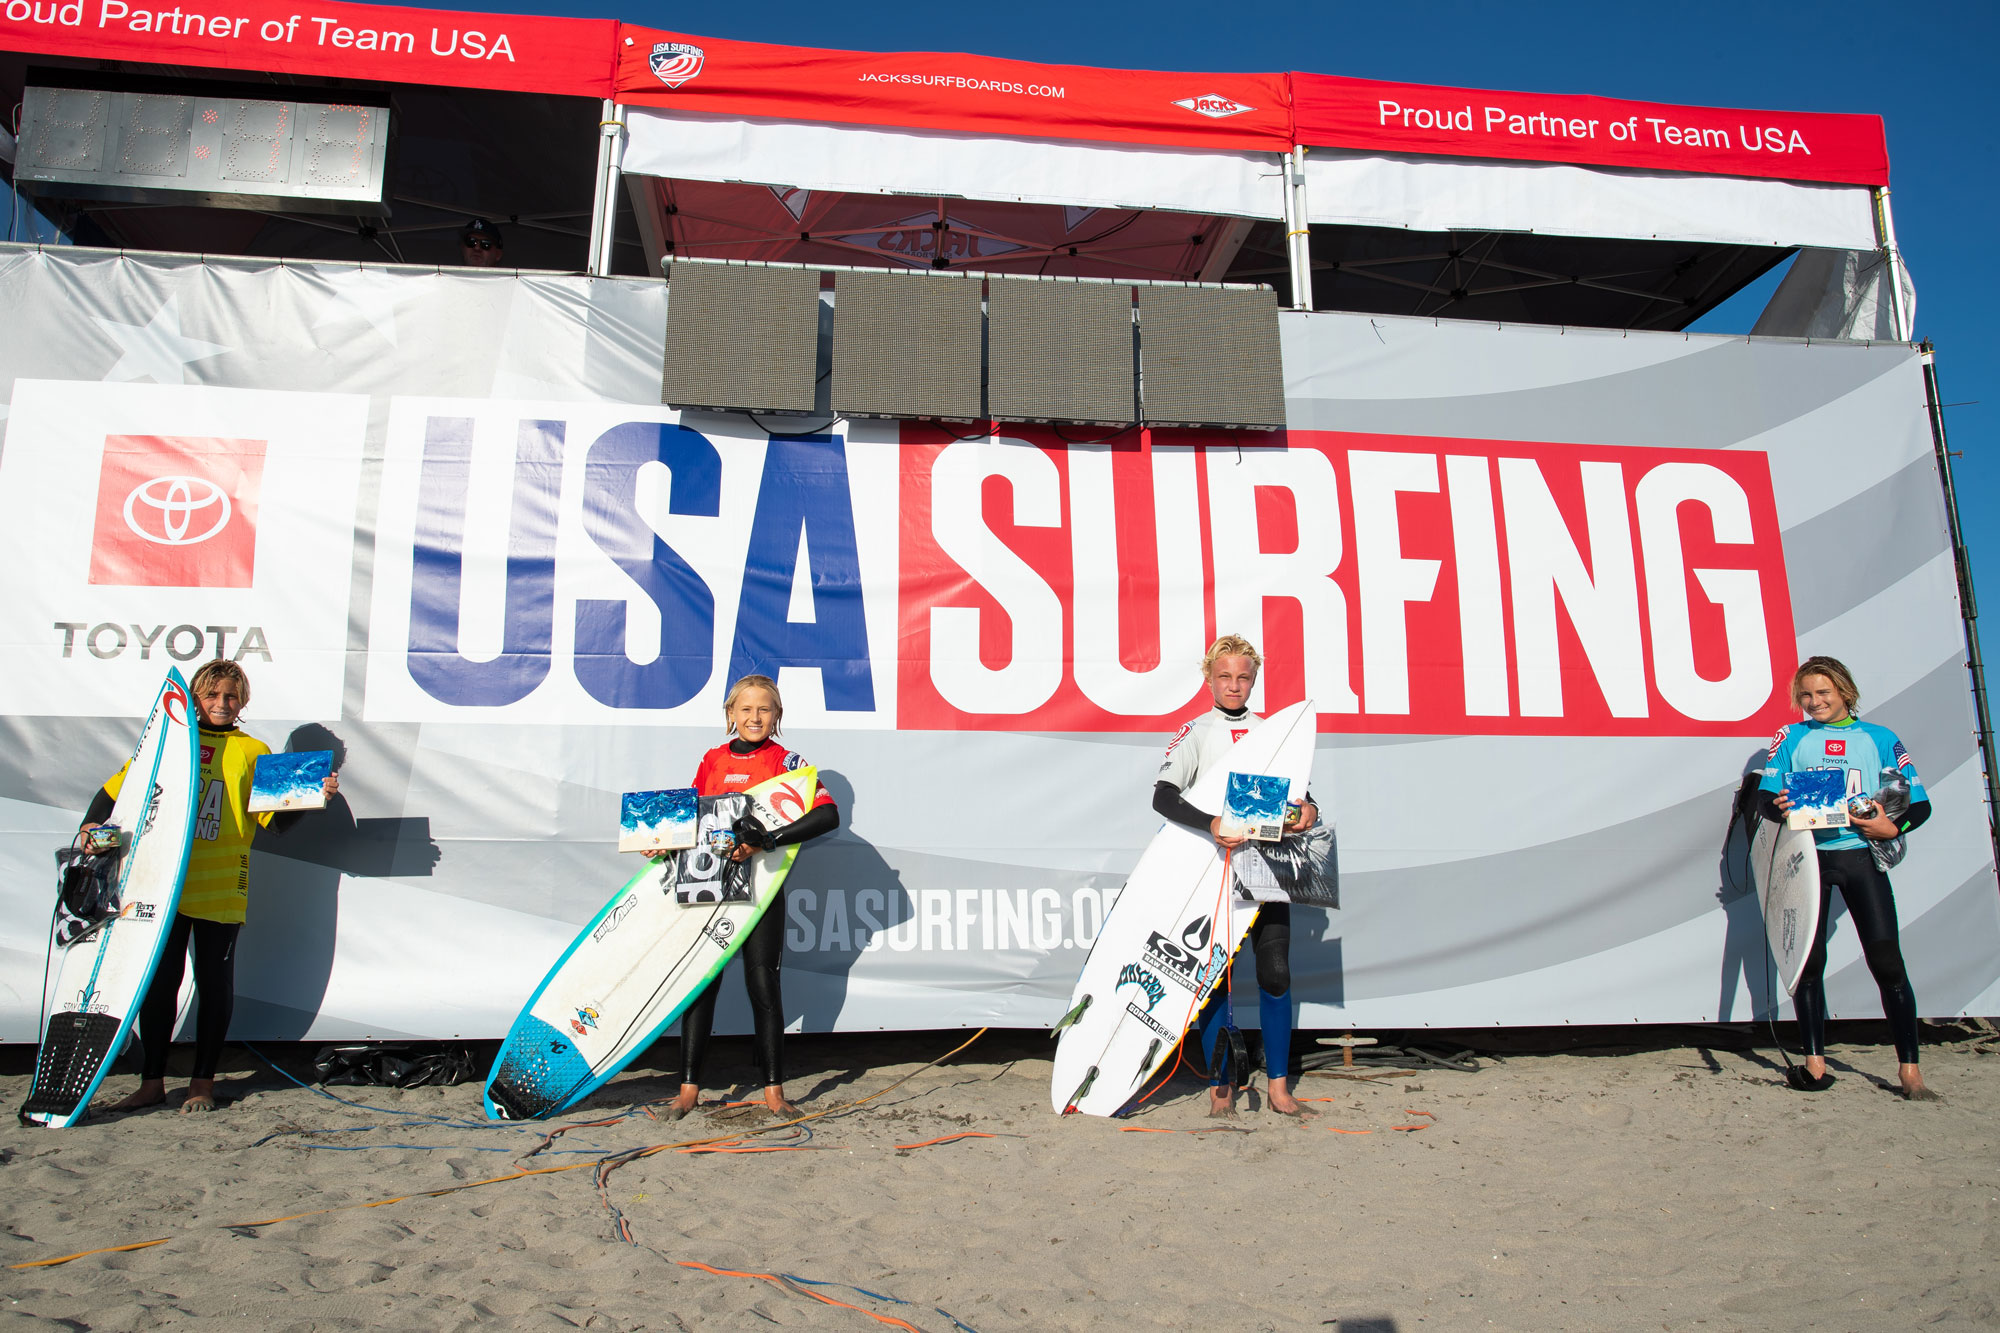 USA-Surfing-Header